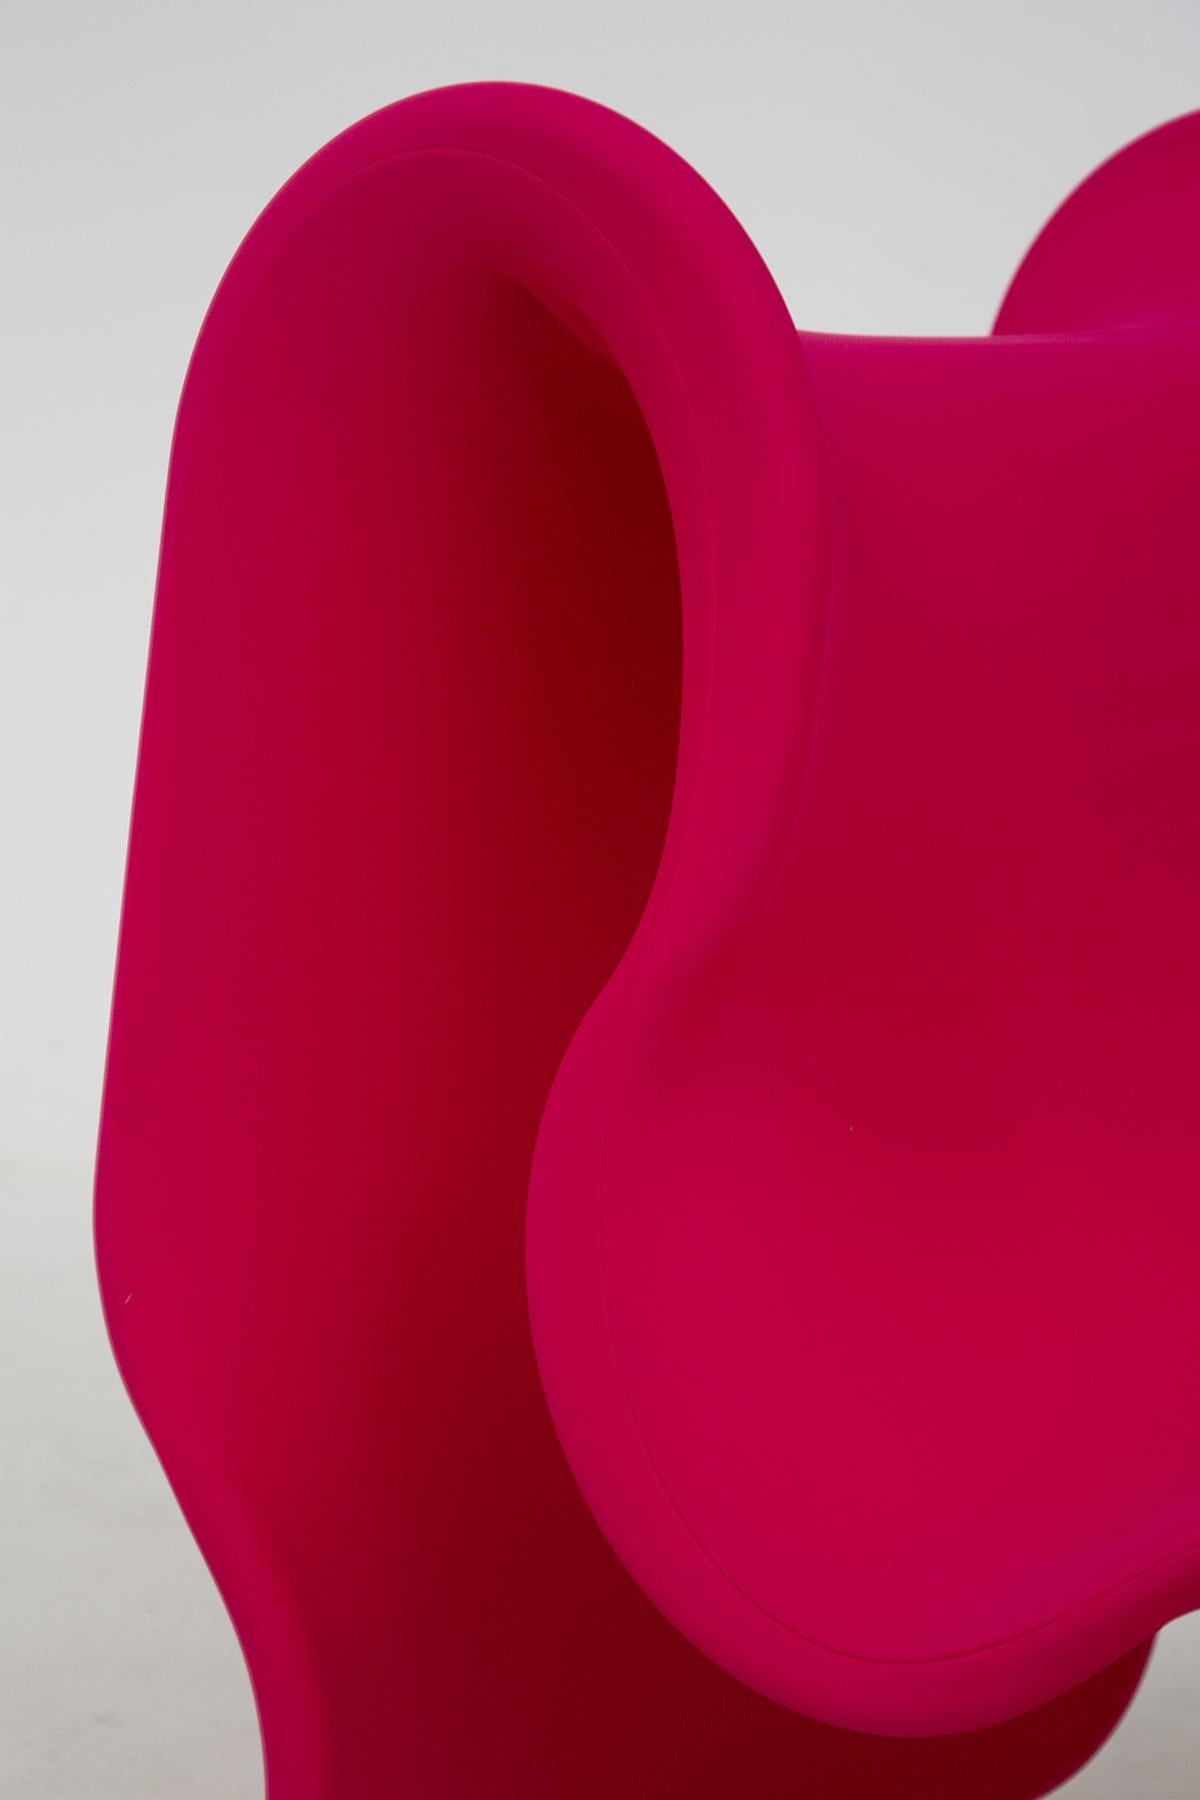 Beau fauteuil Fiocco produit par Busnelli, né en 1970 du projet de Gianni Pareschi.
Il apporte dans le salon la même note de vivacité et de brio d'un ruban coloré enroulé sur le papier qui enveloppe le précieux cadeau pour quelqu'un qui nous est